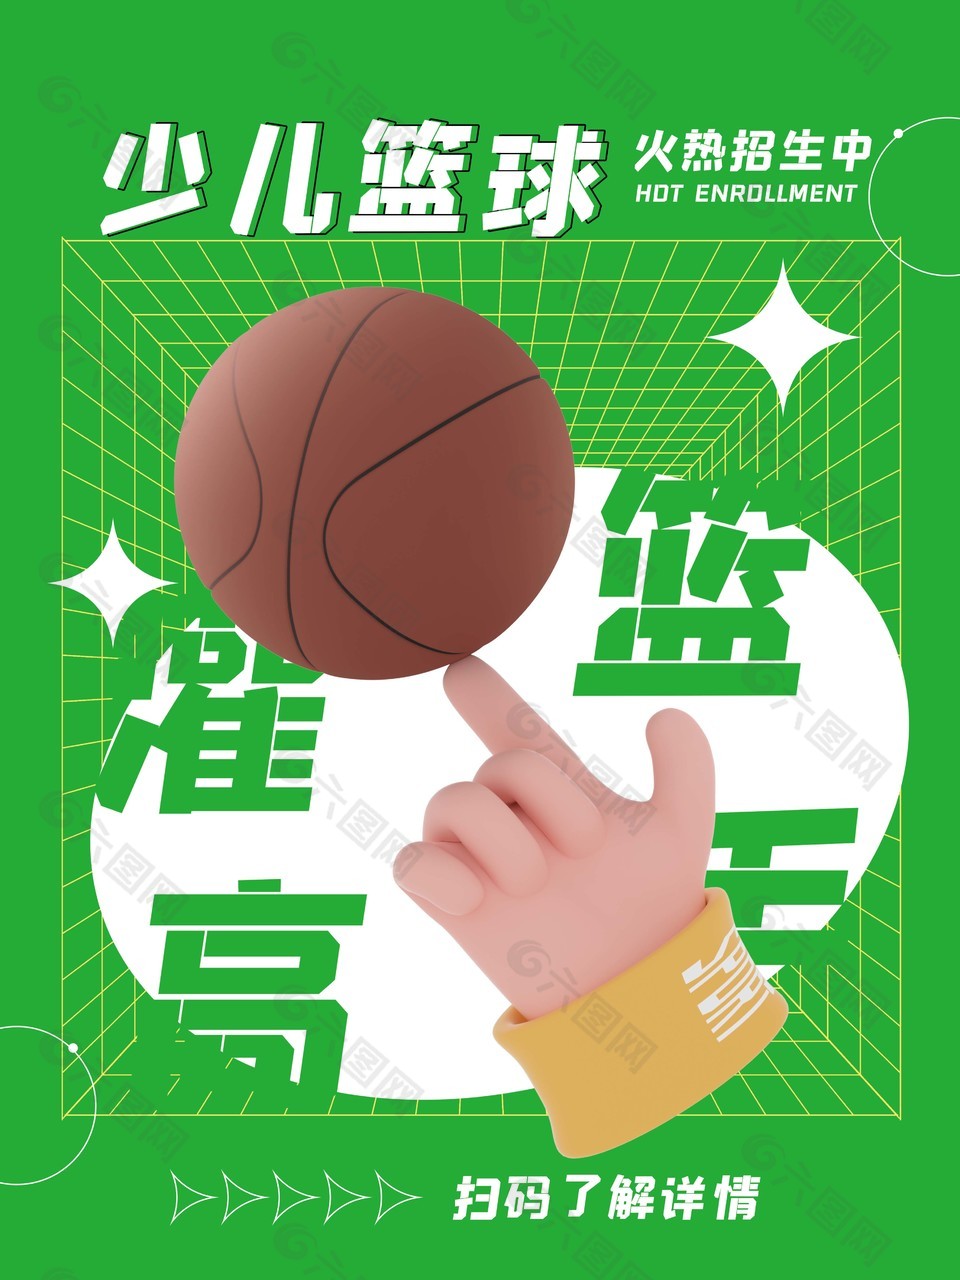 少儿篮球火热招生绿色创意海报设计